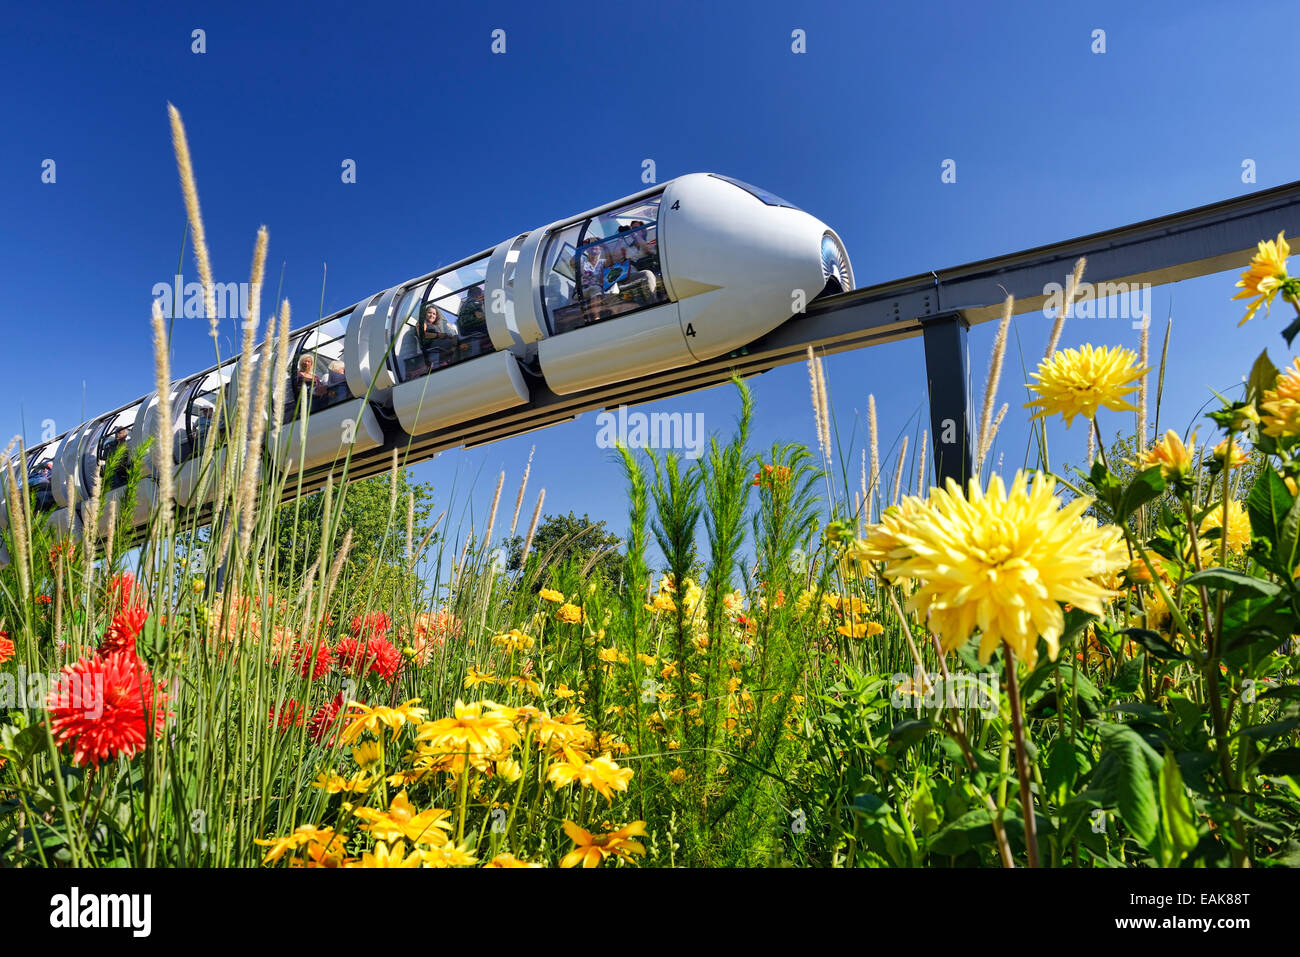 Monorail train at the site of the International Garden Show 2013, Wilhelmsburg, Hamburg, Hamburg, Germany Stock Photo